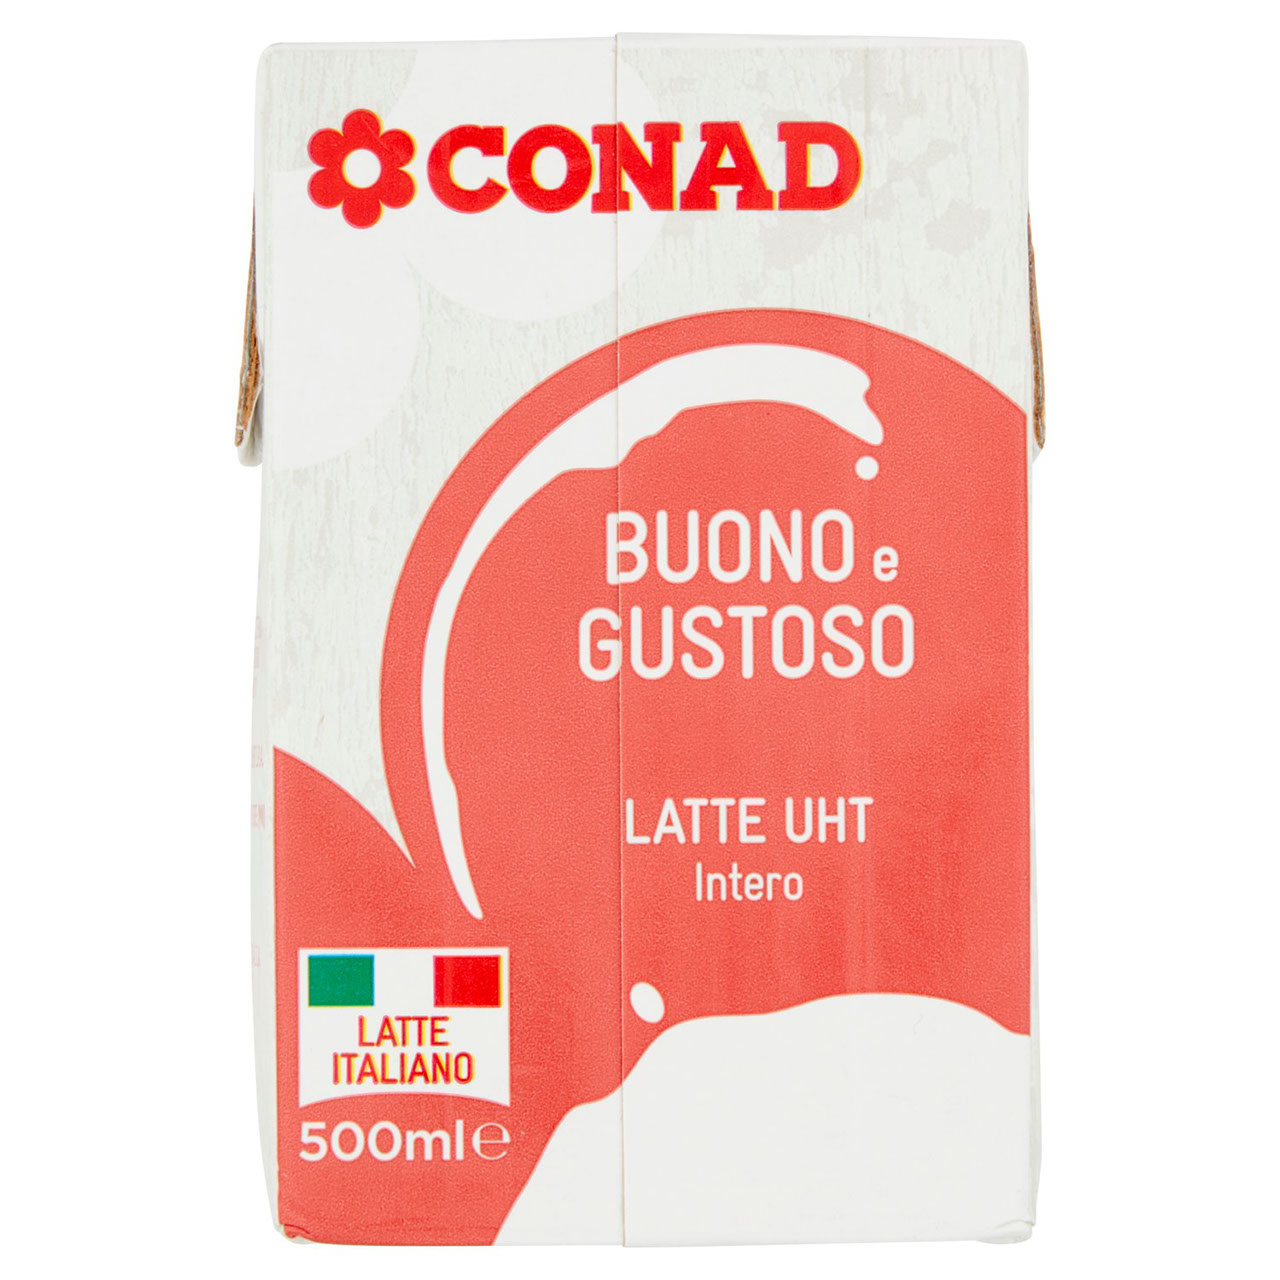 Latte UHT Intero 500 ml Conad in vendita online